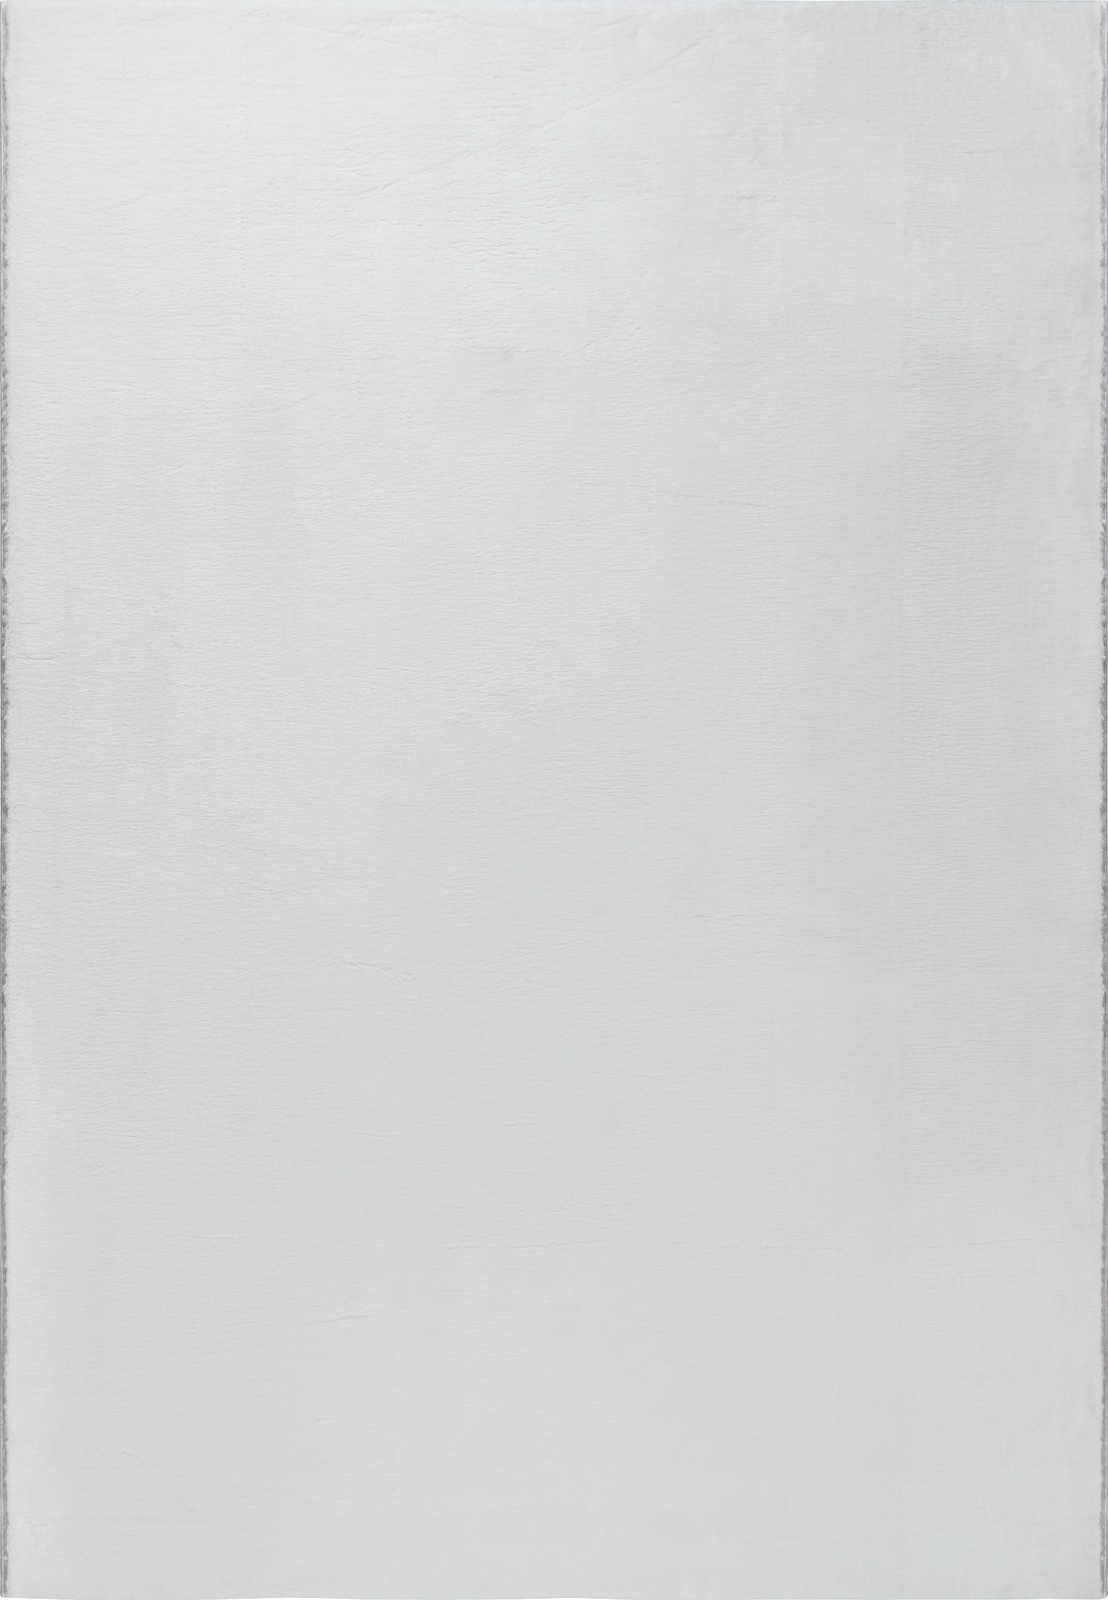             Flauschiger Hochflor Teppich in angenehmen Creme – 200 x 140 cm
        